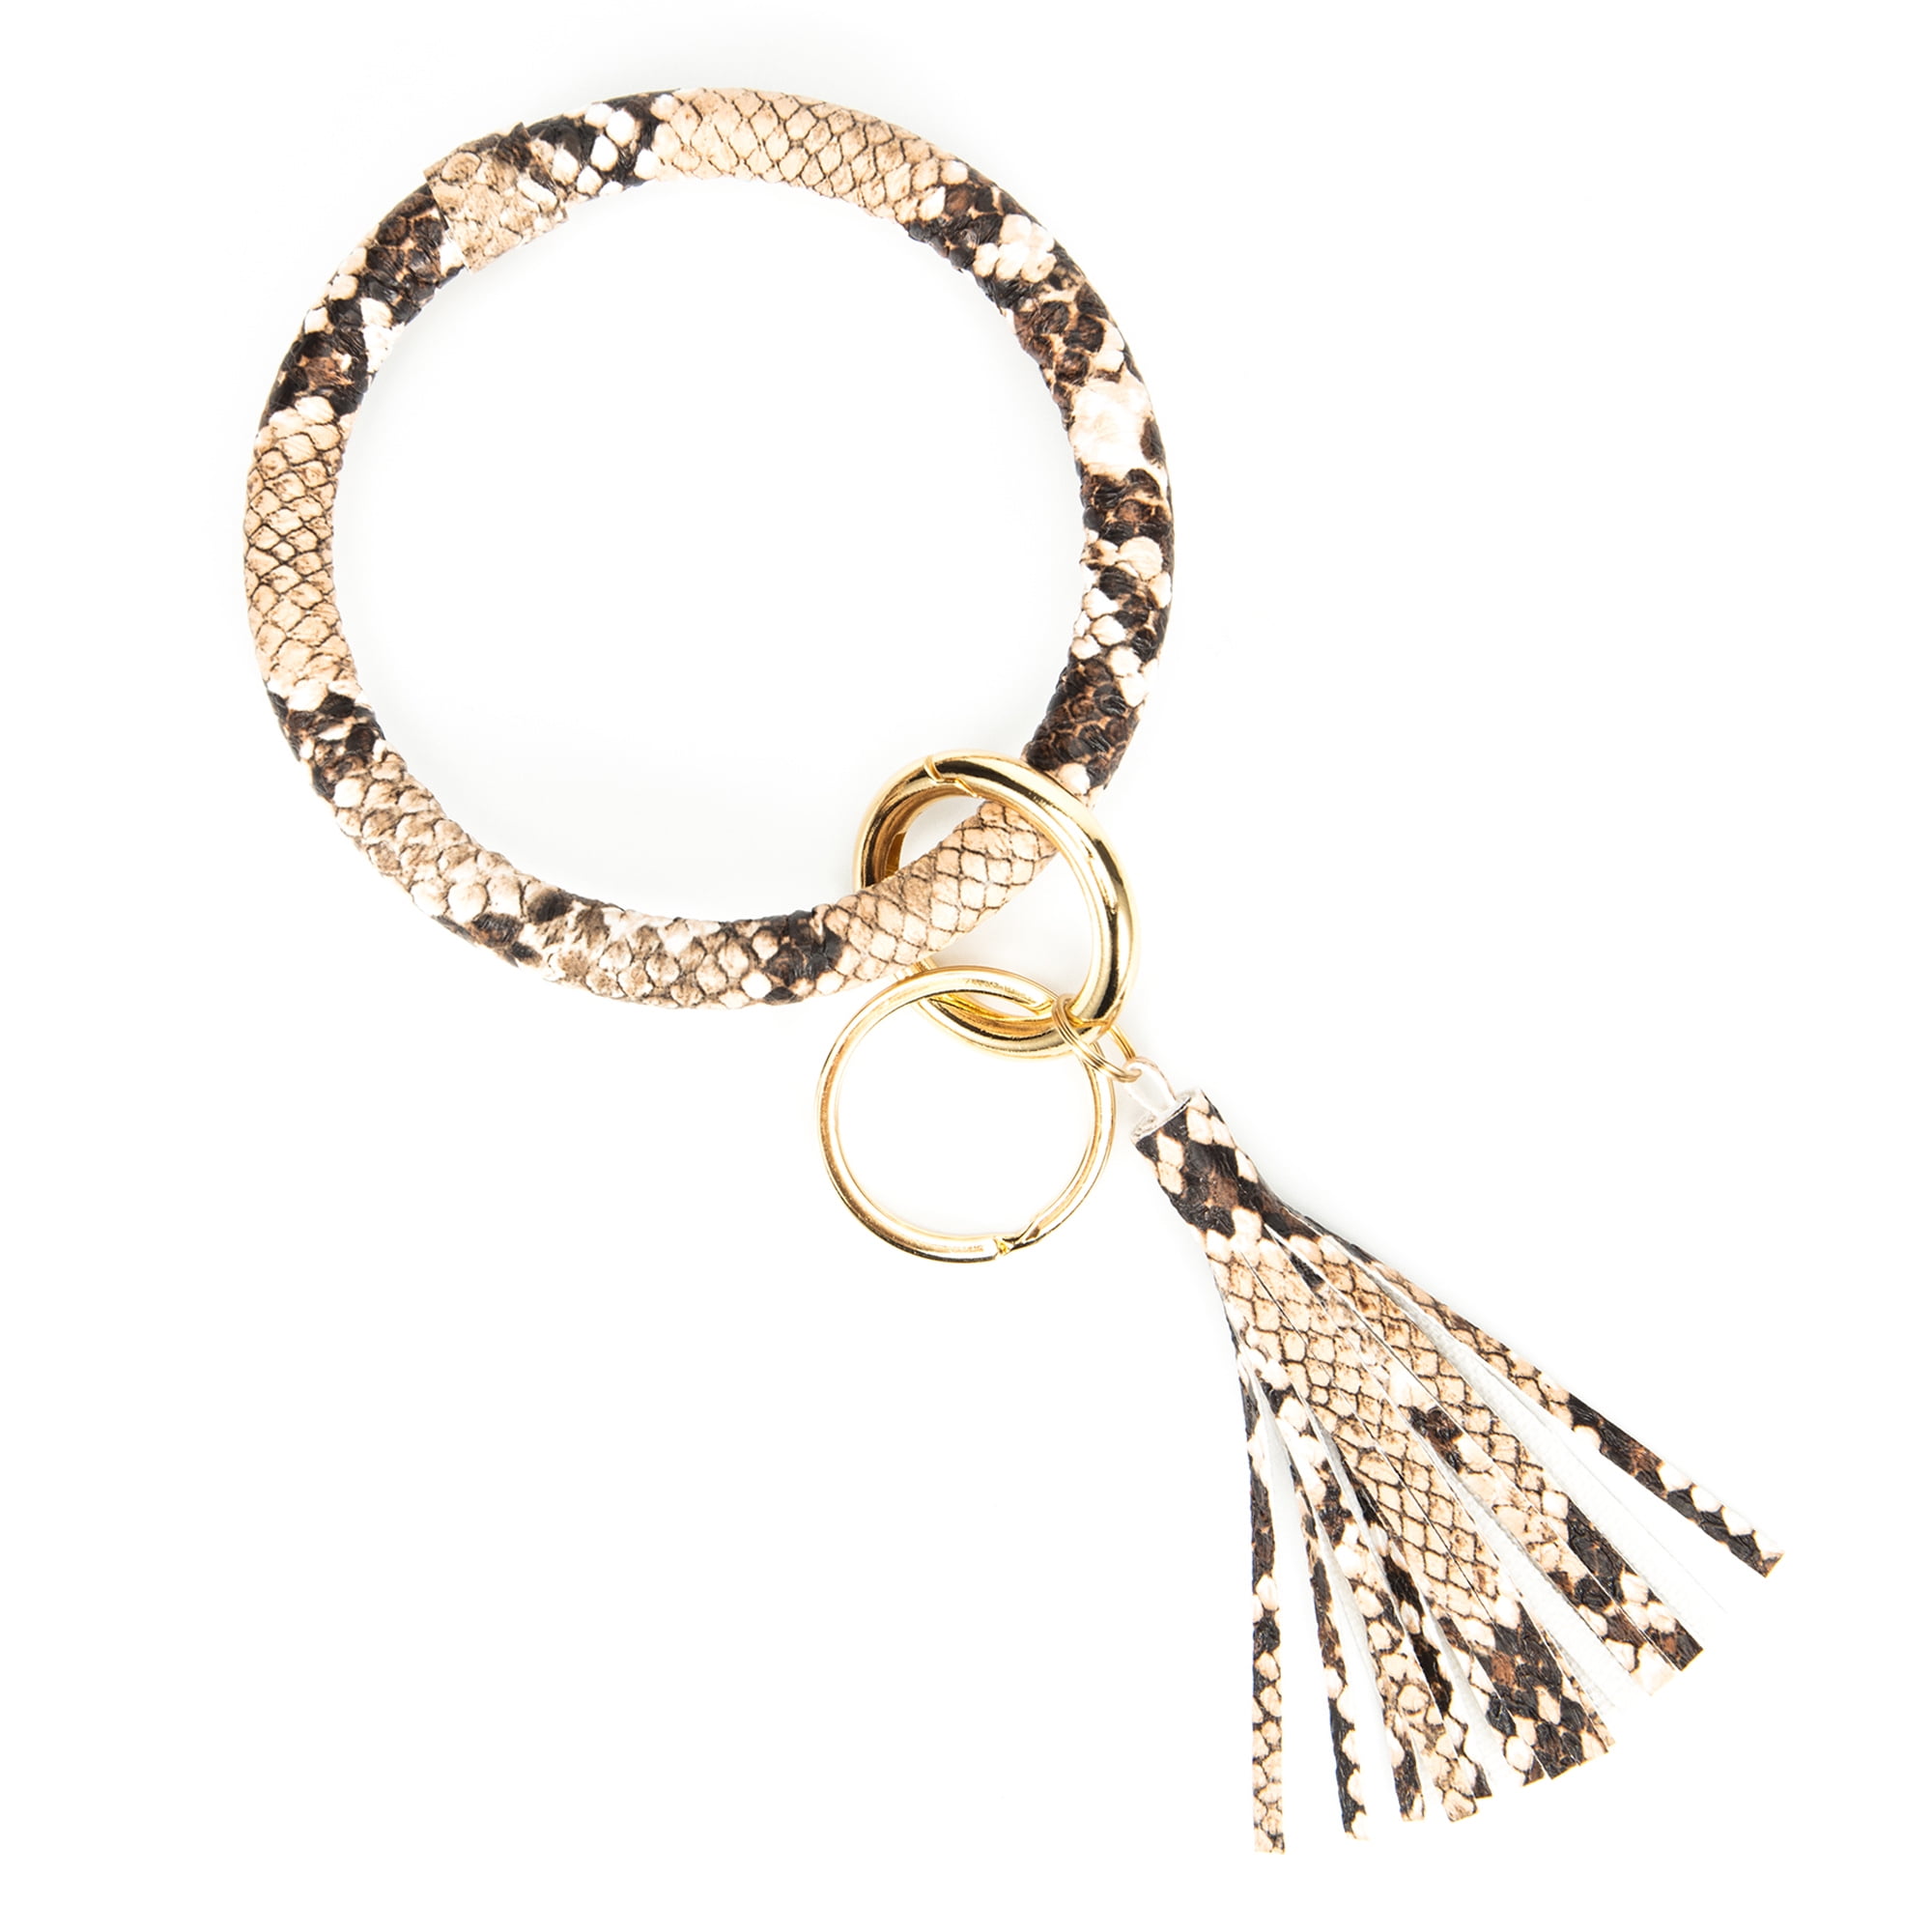 Round Key Ring Chains Leather Oversized Bracelet Bangle Keychain Holder Tassel